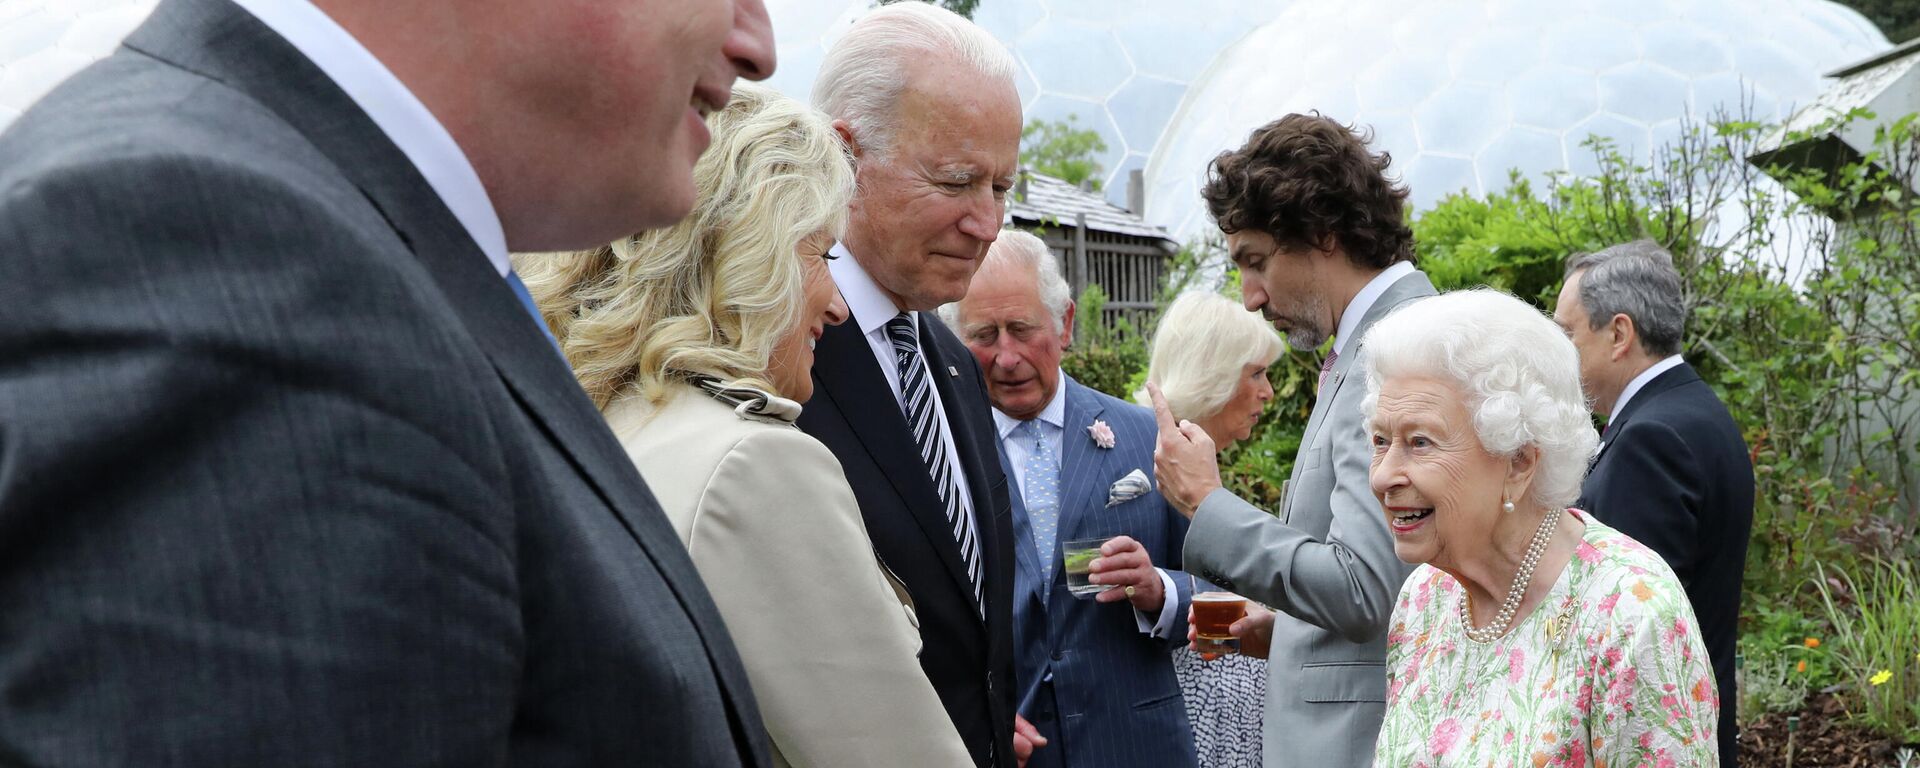 La reina británica Isabel II saluda a Joe Biden, presidente de EEUU, y su esposa, Jill Biden, durante un evento en el marco de la 47 cumbre del G7 - Sputnik Mundo, 1920, 13.06.2021